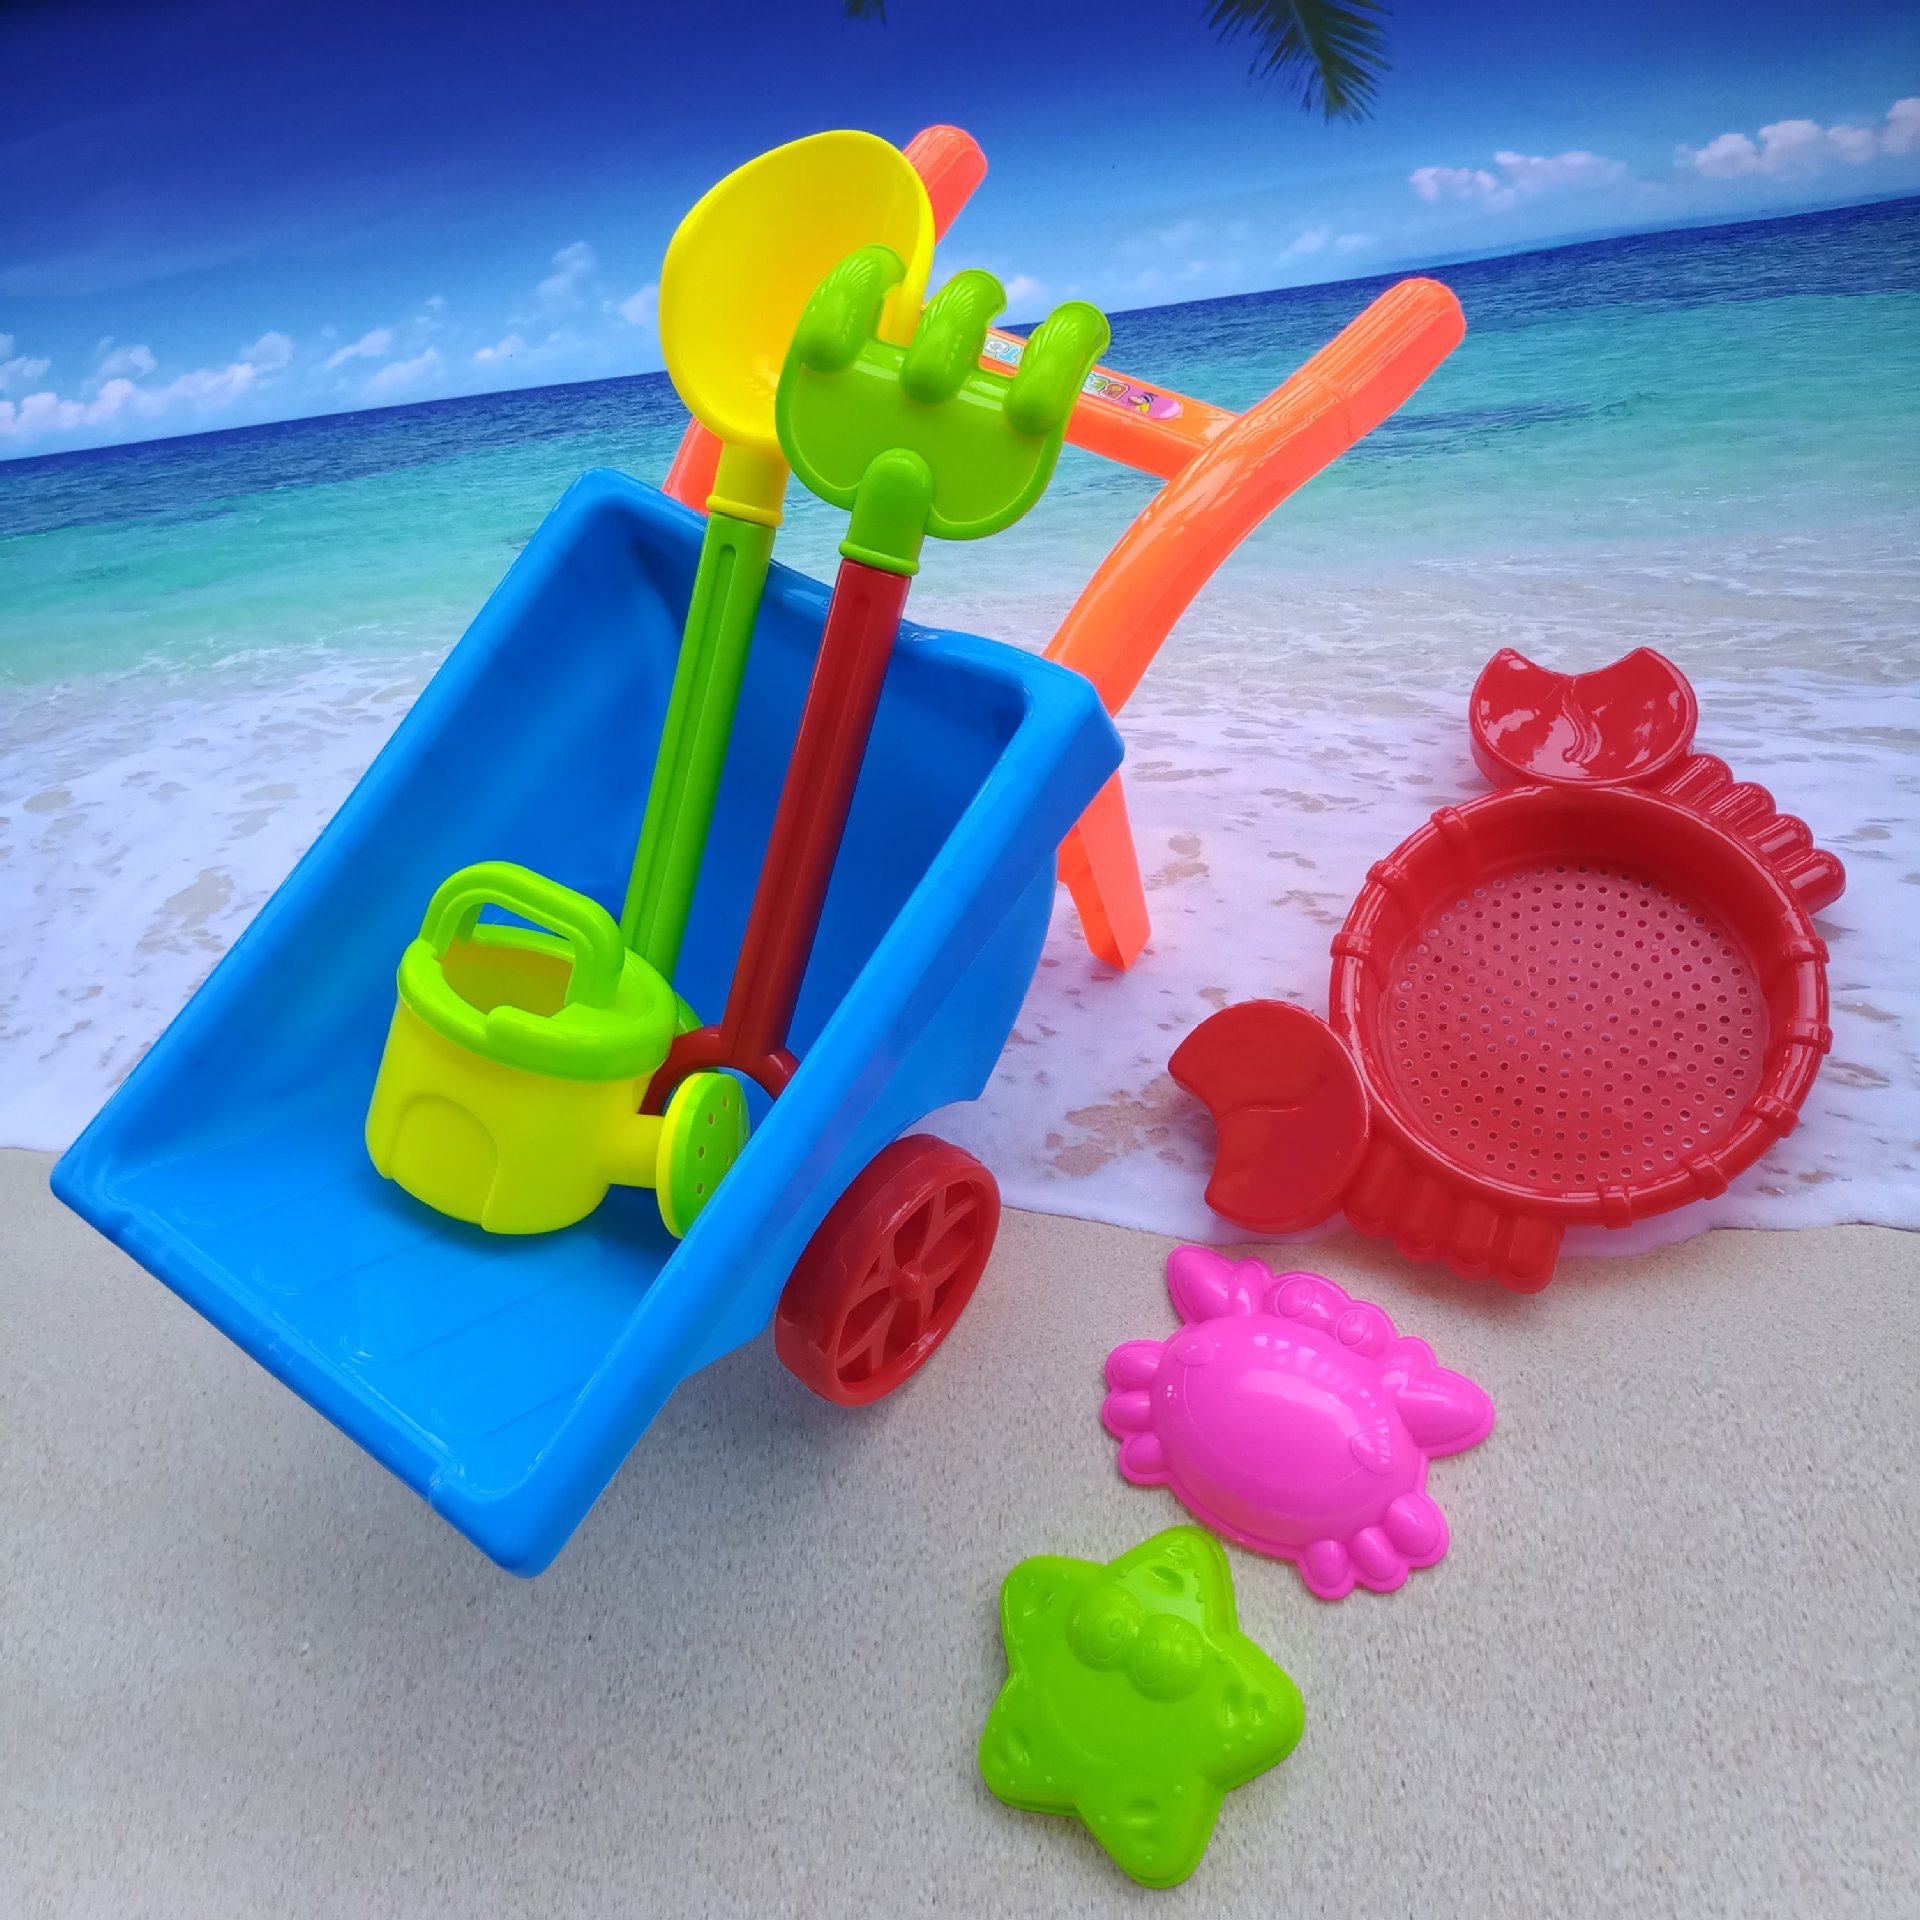 儿童沙滩手推车玩具 沙滩玩具套装 沙铲 沙滩桶套装 玩沙戏水沙漏